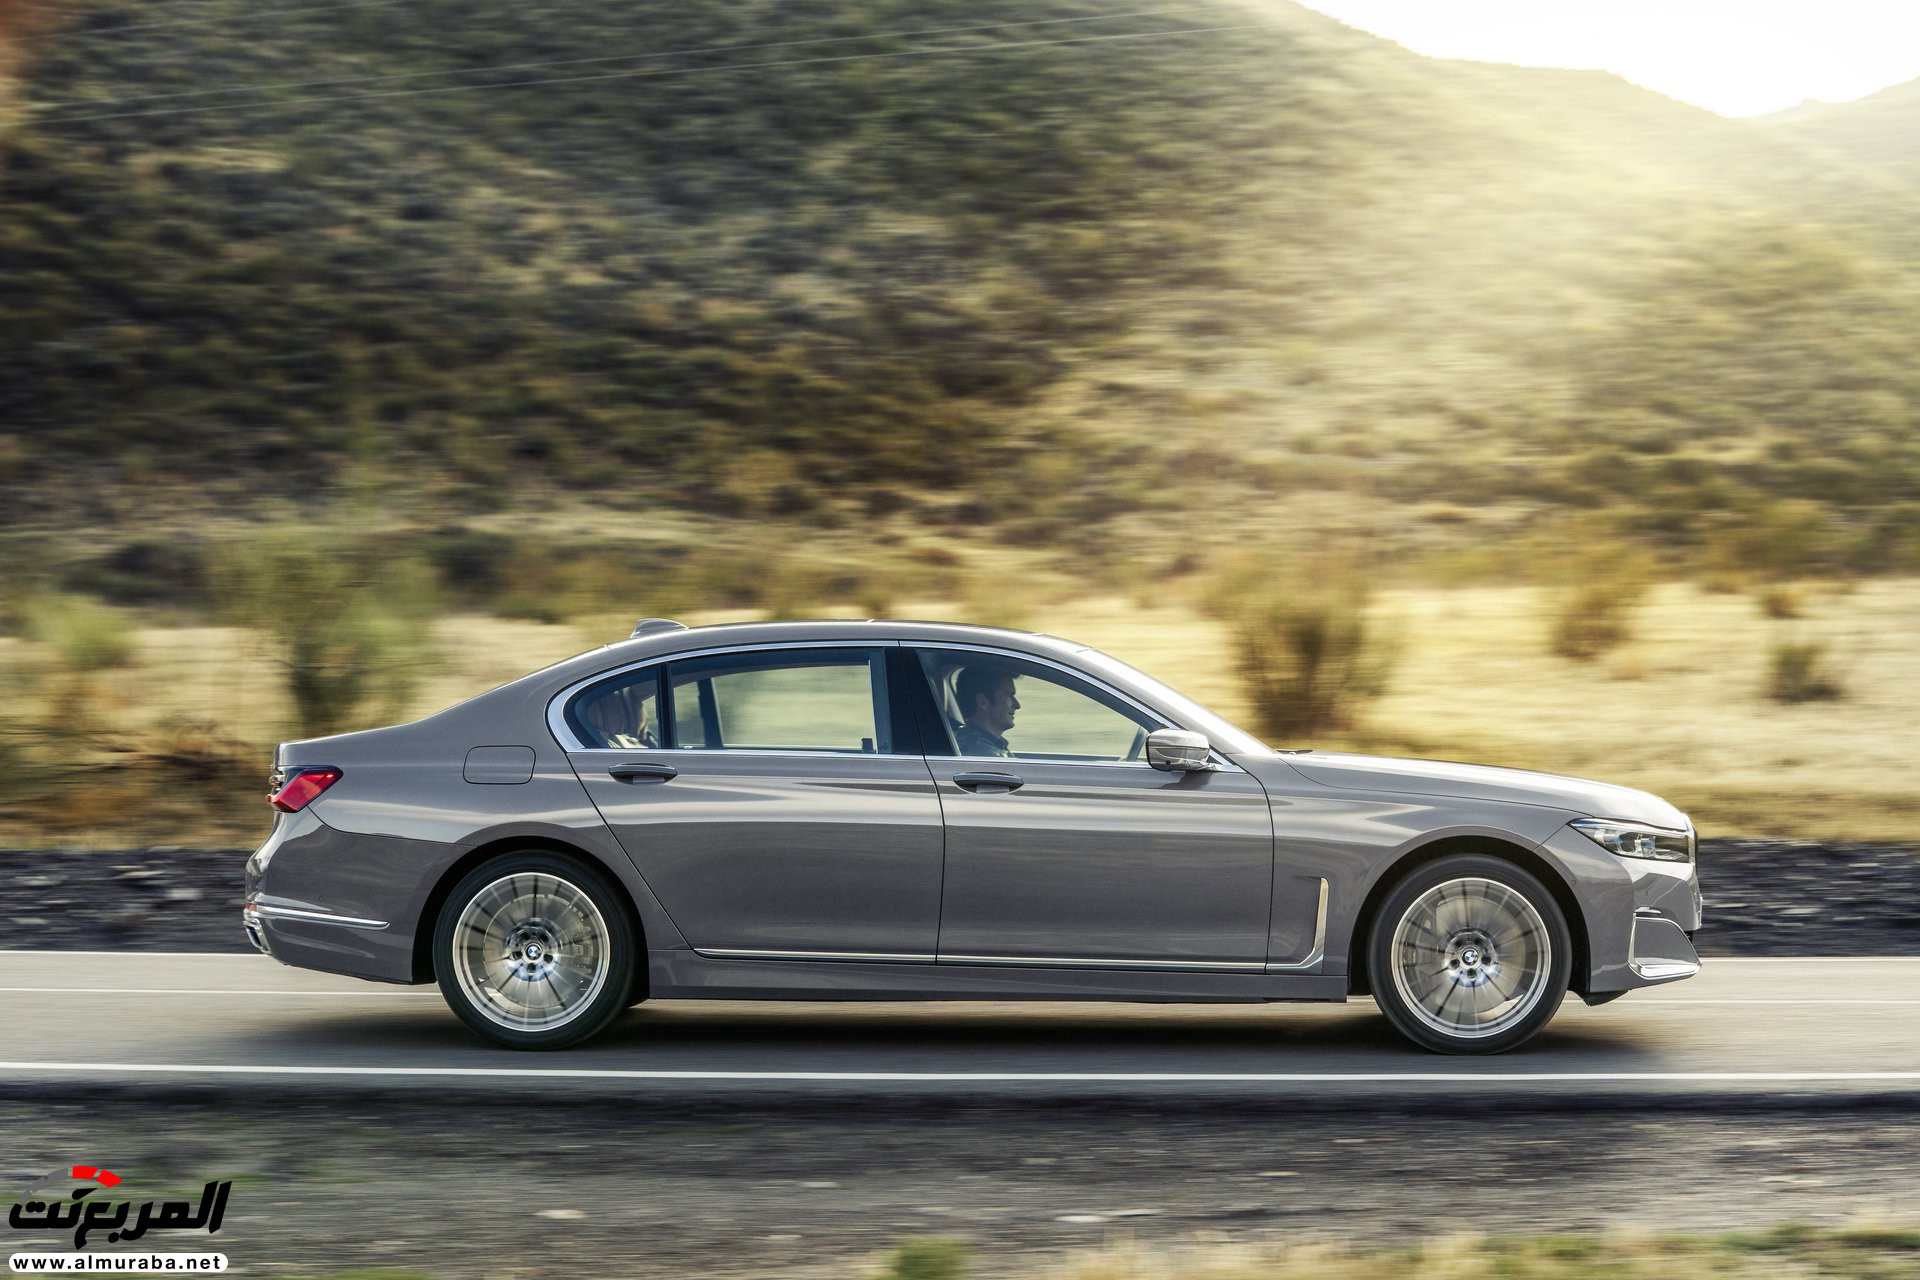 بي ام دبليو الفئة السابعة 2020 المحدثة تكشف نفسها رسمياً "صور ومواصفات" BMW 7 Series 276